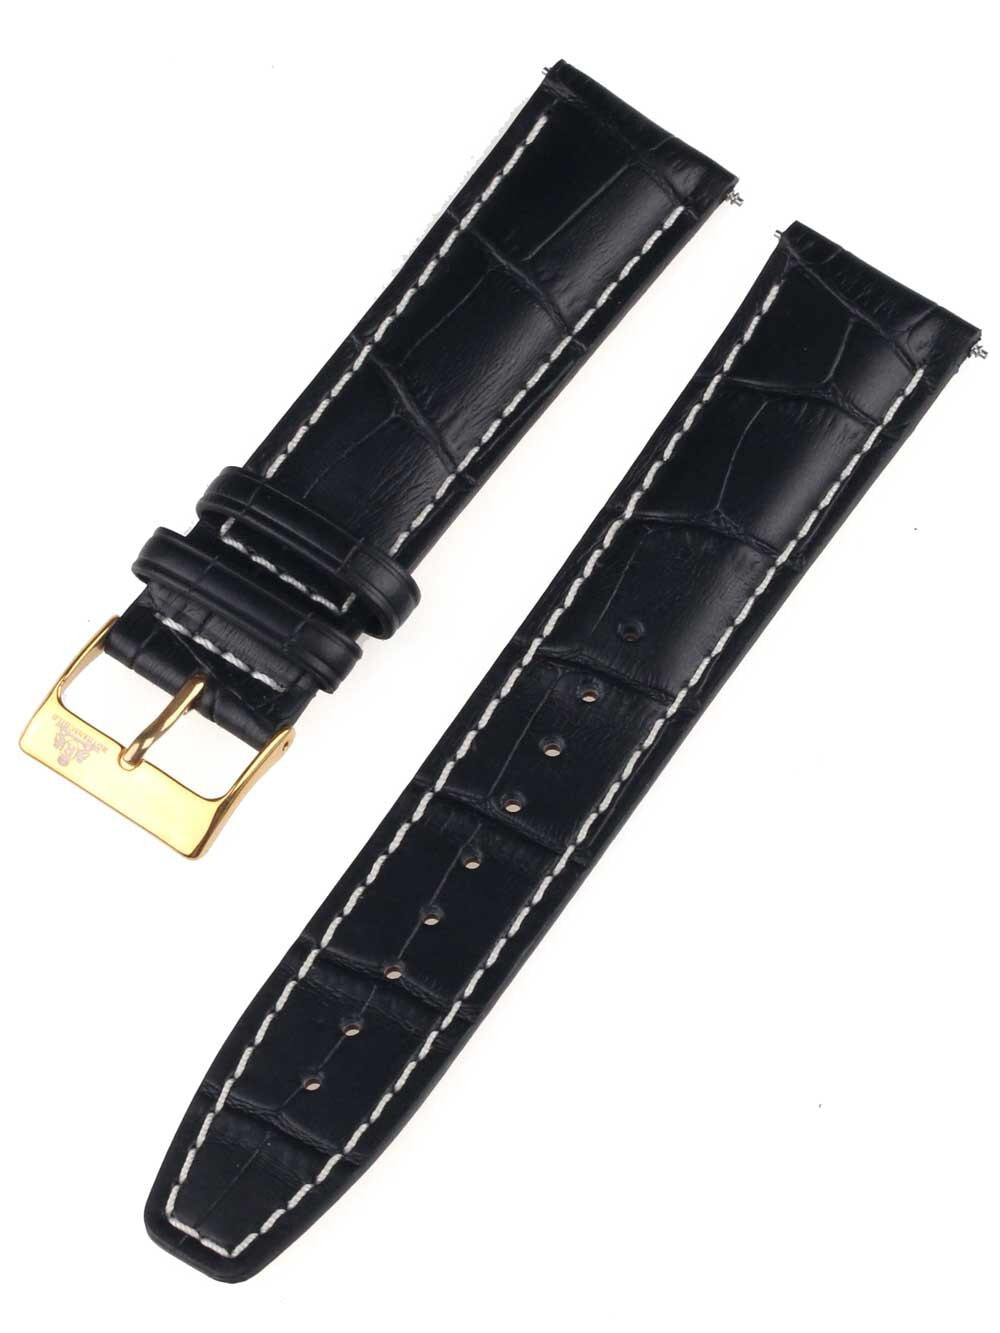 Ремешок или браслет для часов Rothenschild mid-17757 Universal Strap 22mm Black, Gold buckle